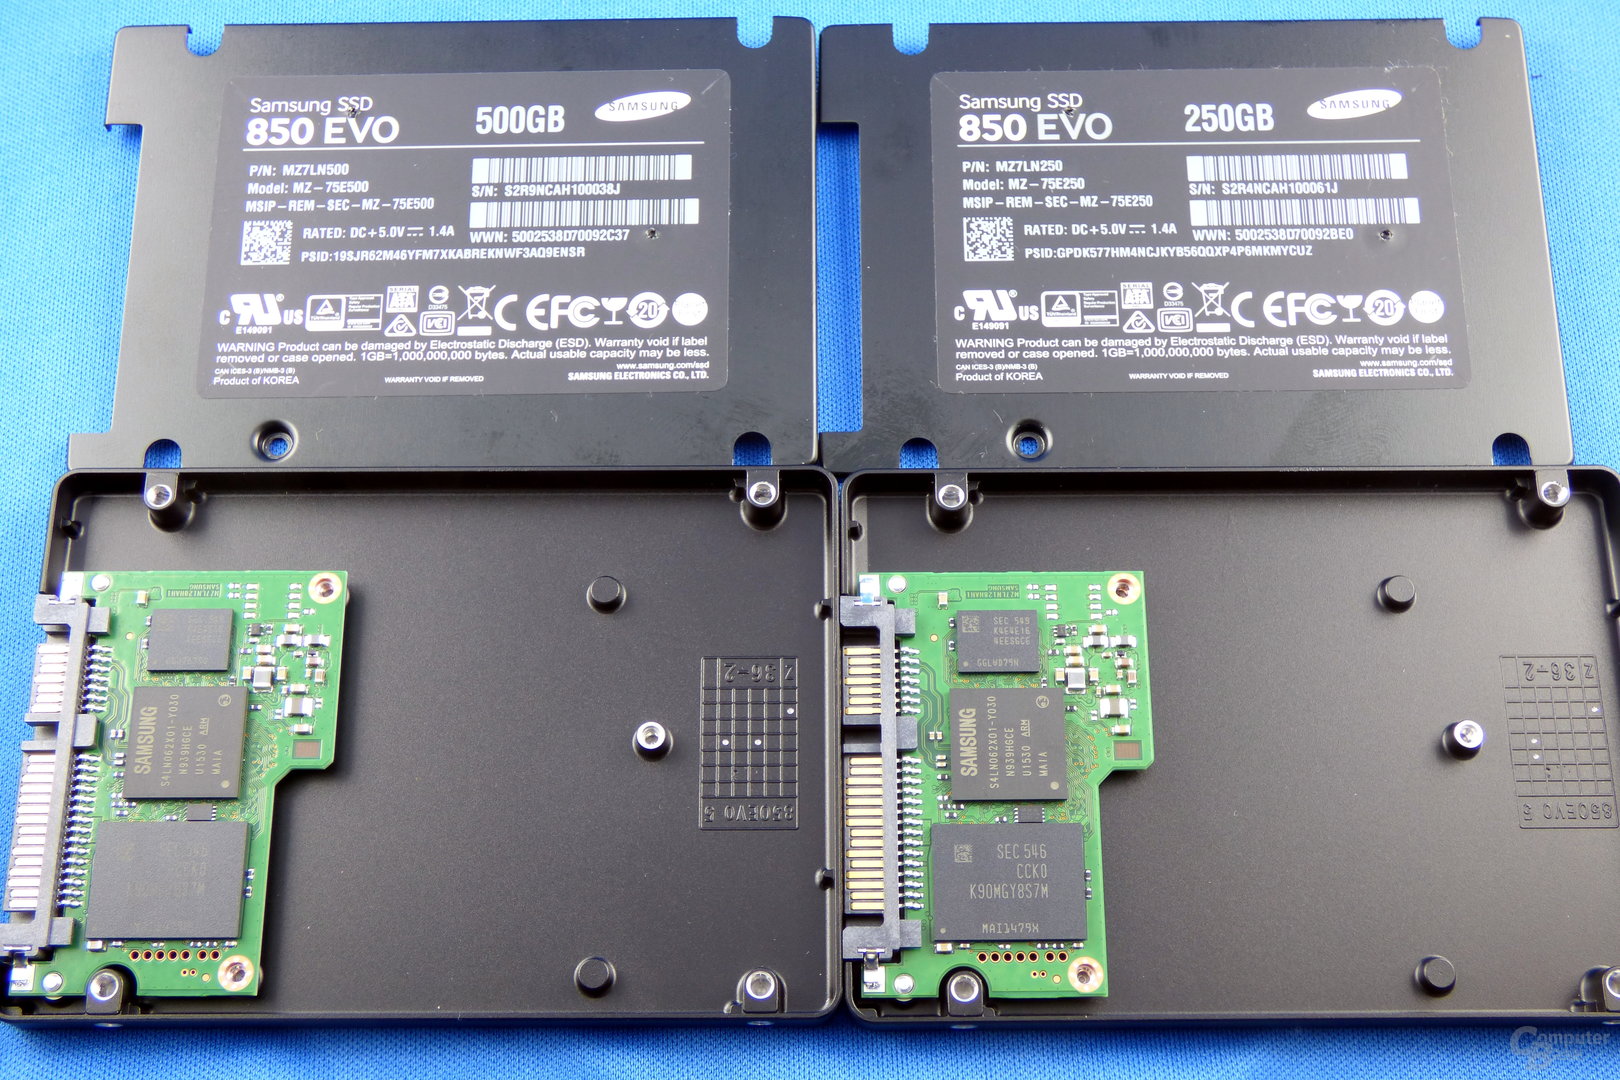 Samsung 850 Evo V2 mit 500 GB (links) und 250 GB (rechts)